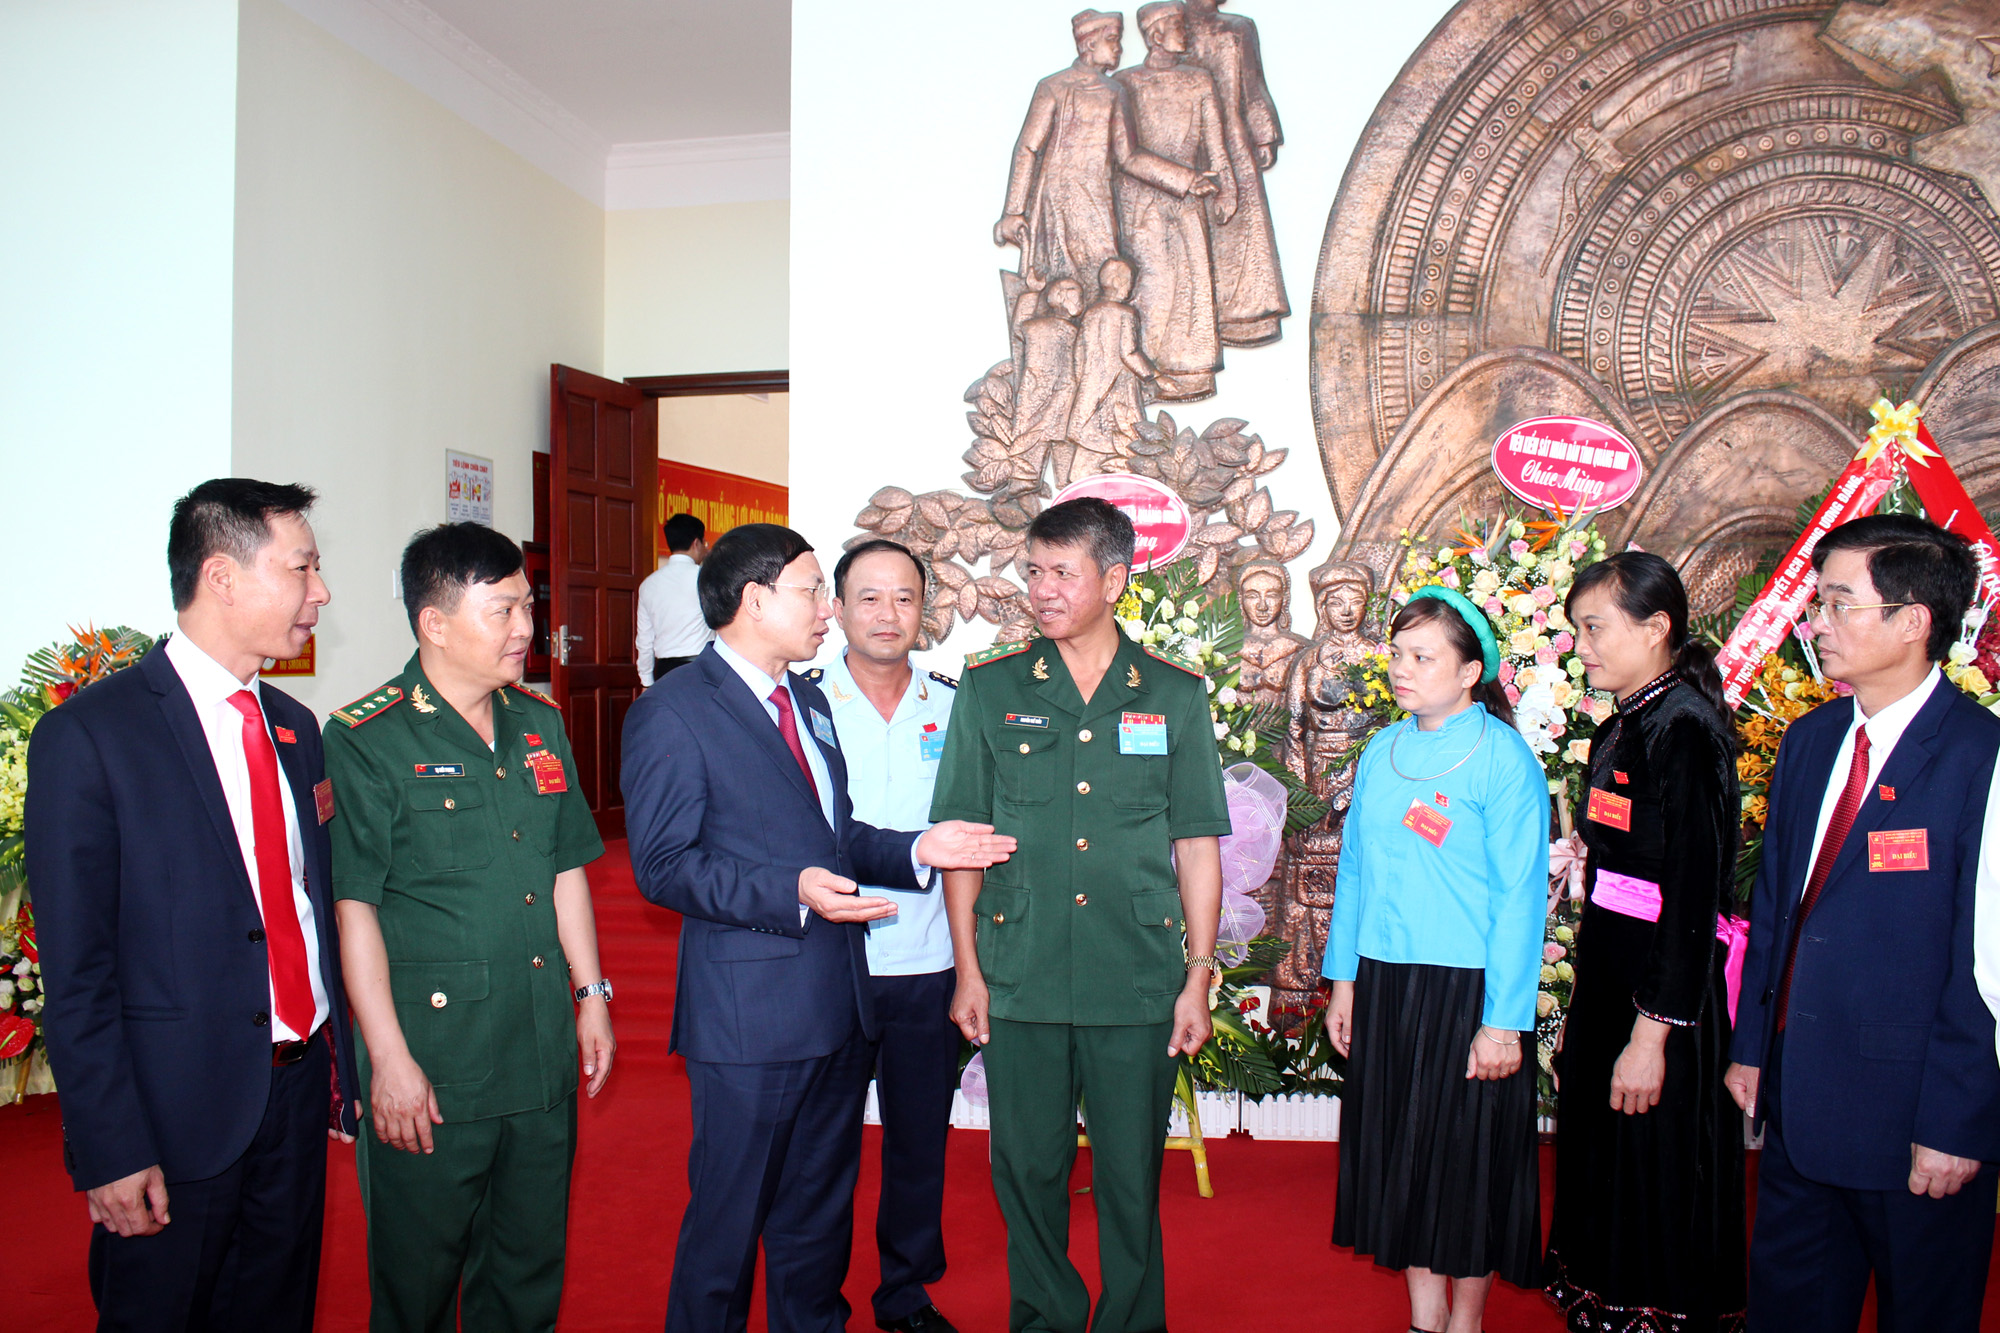 Đồng chí Nguyễn Xuân Ký, Bí thư Tỉnh ủy, Chủ tịch HĐND tỉnh, trò chuyện với cán bộ, đảng viên của TP Móng Cái